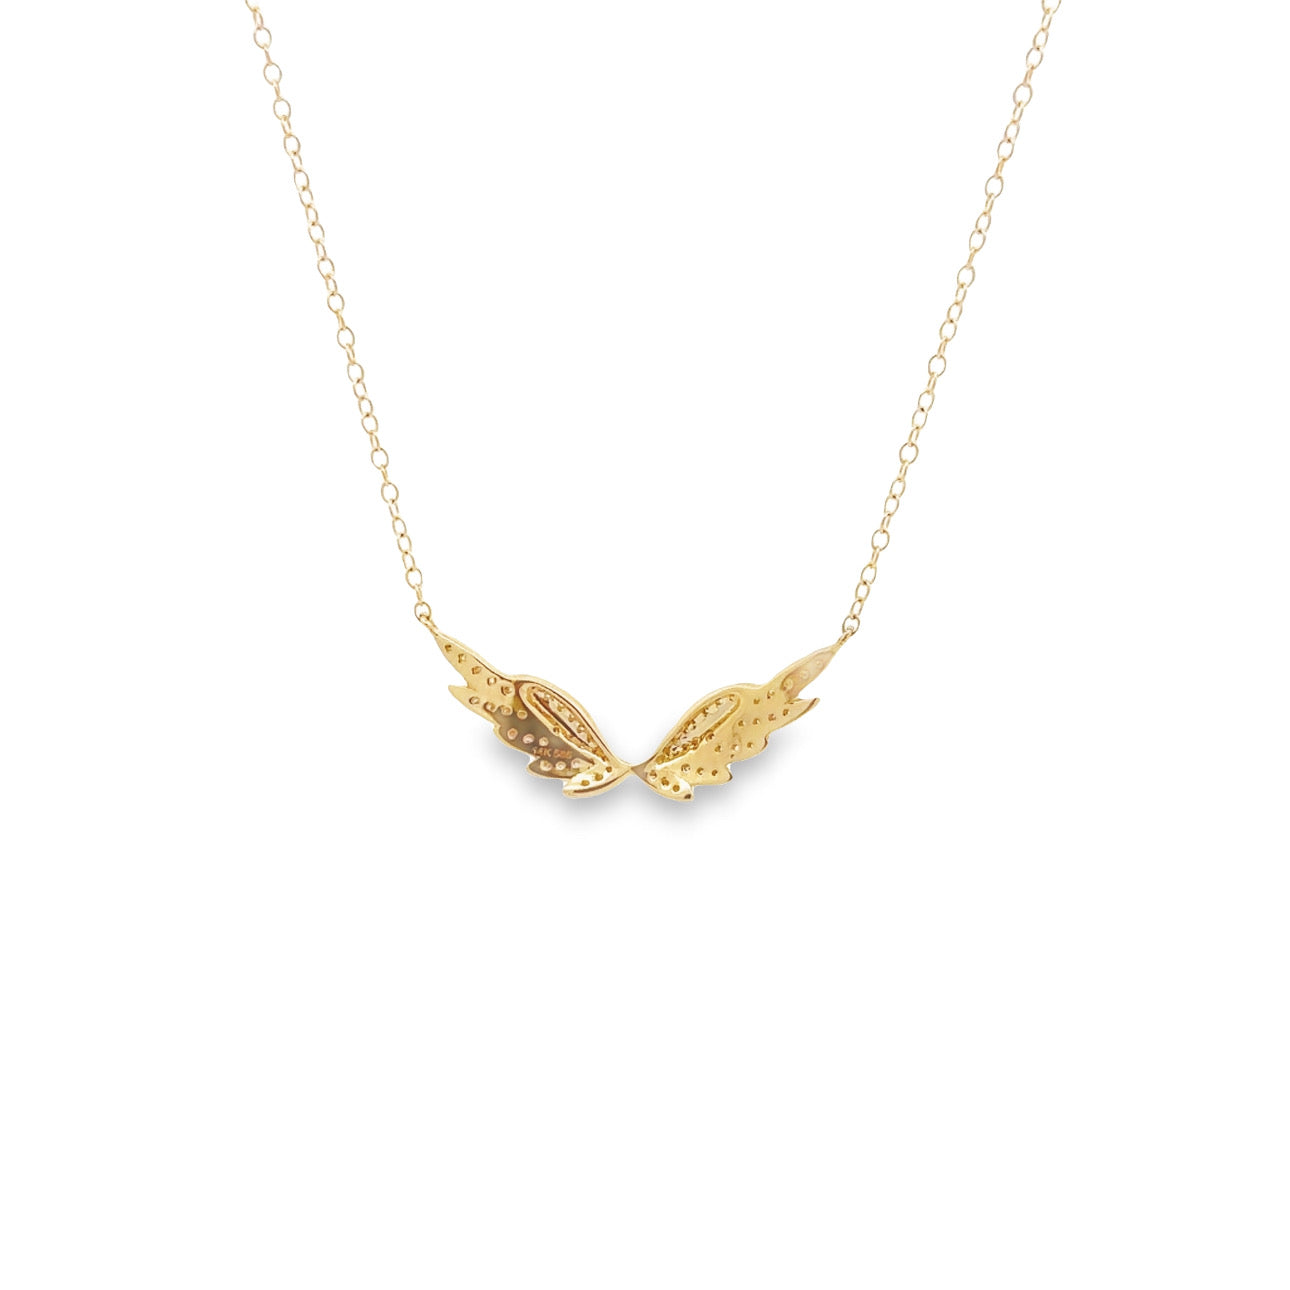 Buy Designer Garnet Pendant in 14k Solid Gold for Women